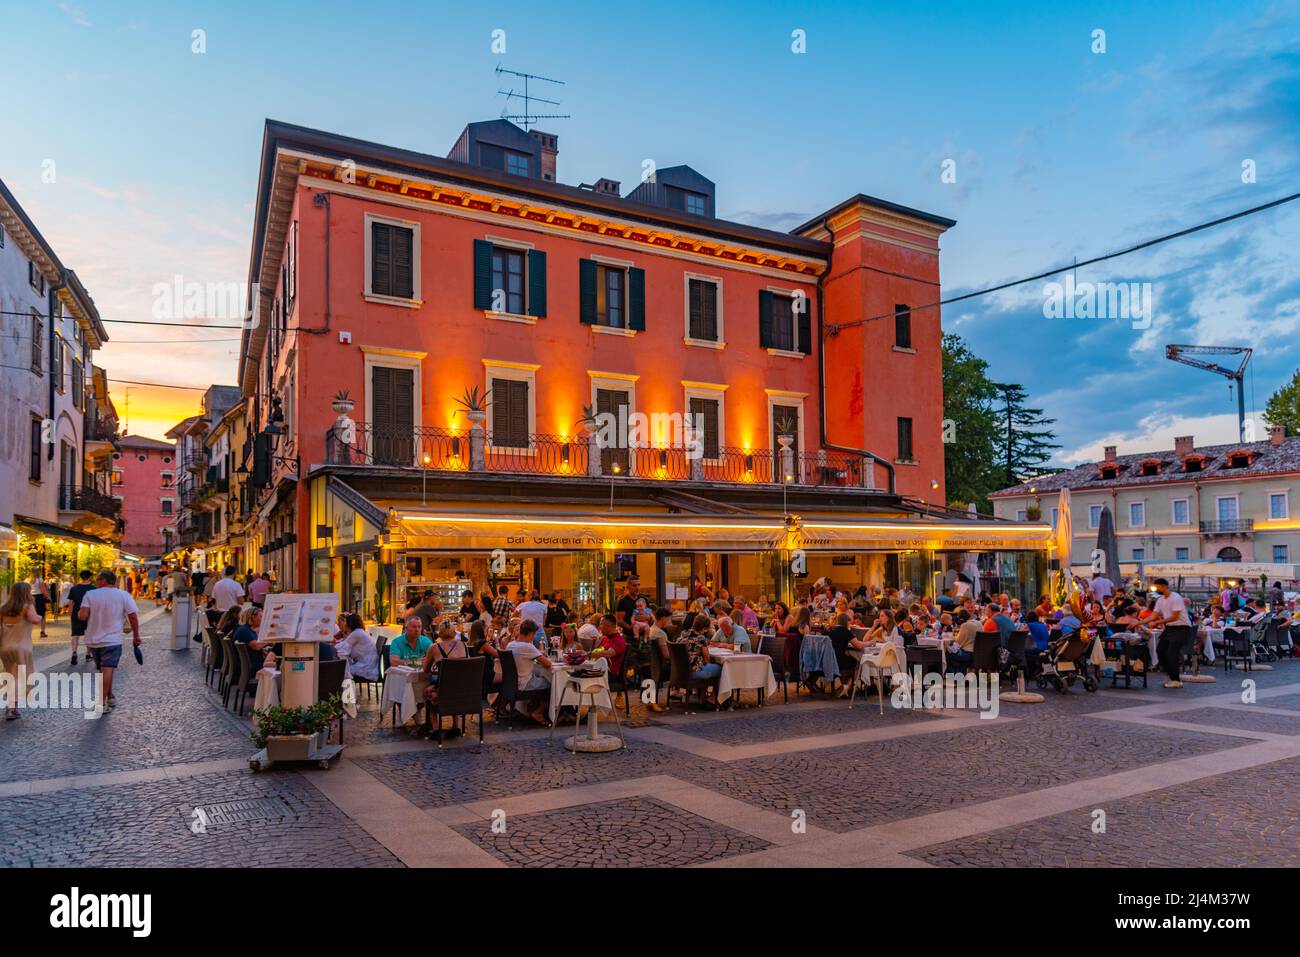 Peschiera del Garda, Italy, August 26, 2021: Ferdinando di Savoia square in Italian town Peschiera del Garda. Stock Photo